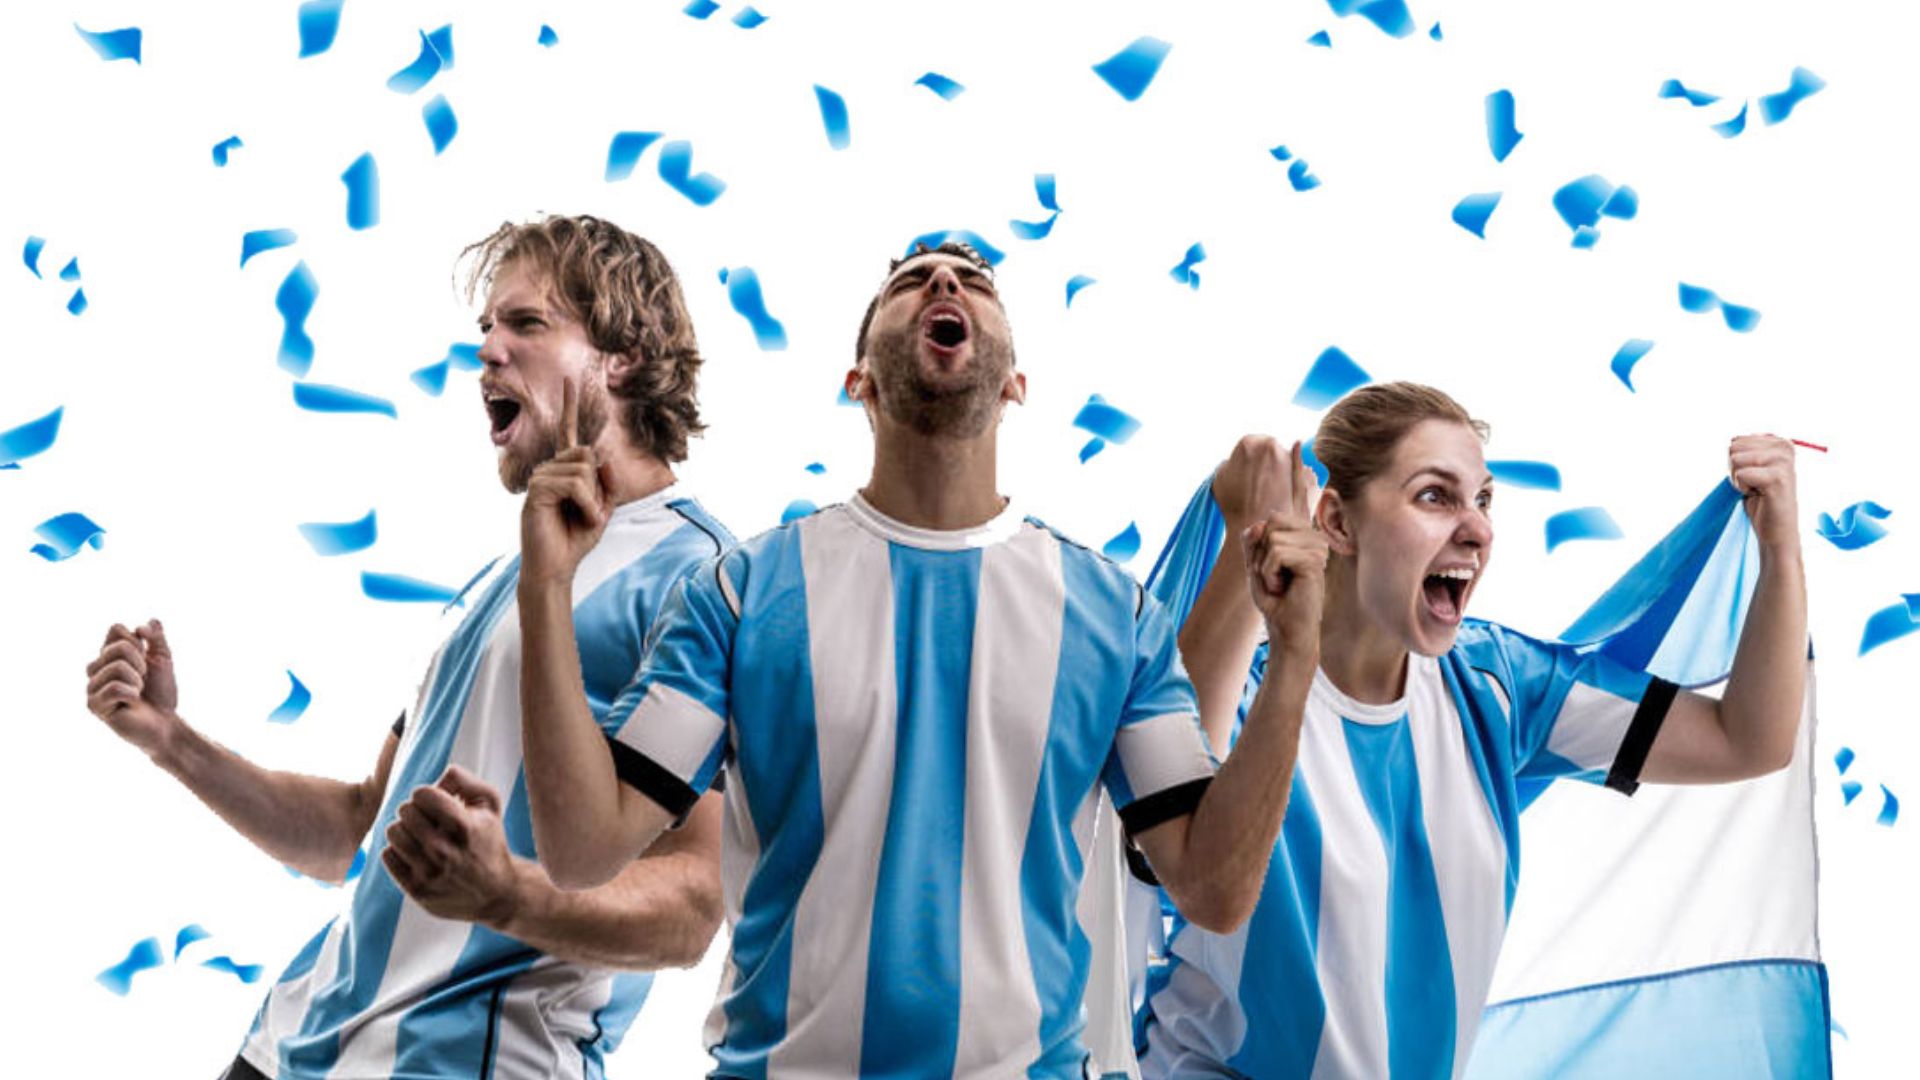 Crowdium entregará 2.500 pesos a cada usuario en caso de que la Argentina obtenga la Copa del Mundo (Crédito: Prensa Crowdium)